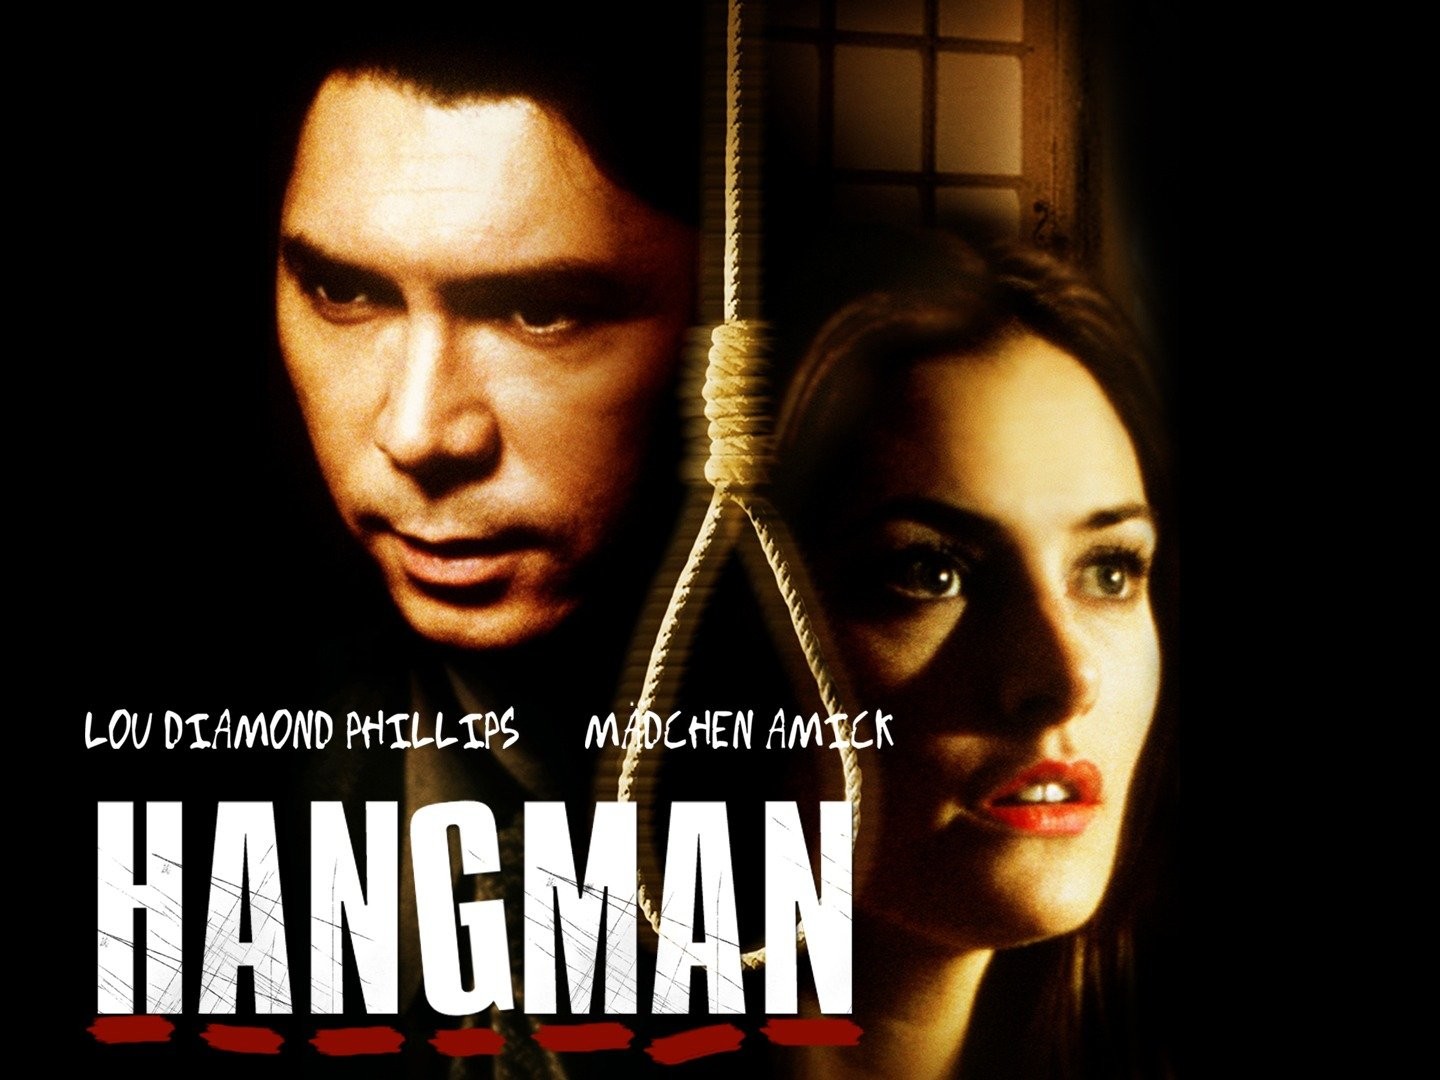 Watch Dear Hangman (2022) Full Movie Free Online - Plex